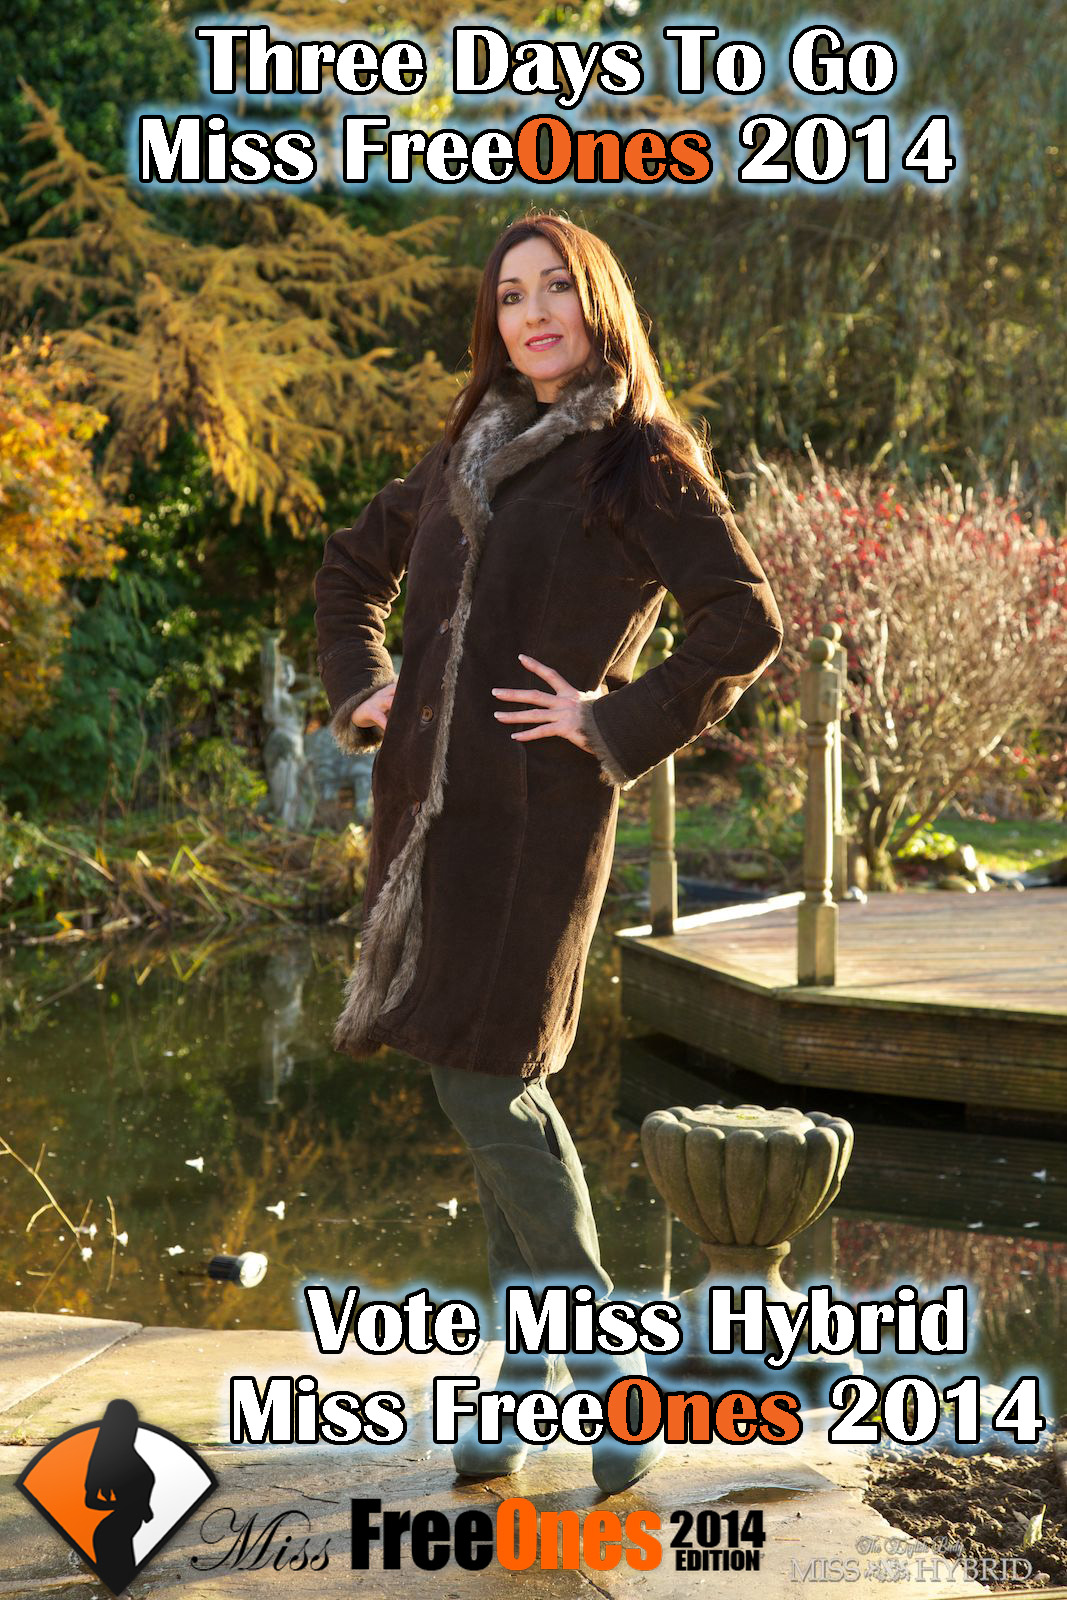 Three Days To Go Final Round Miss FreeOnes, Miss Hybrid, vote Miss Hybrid